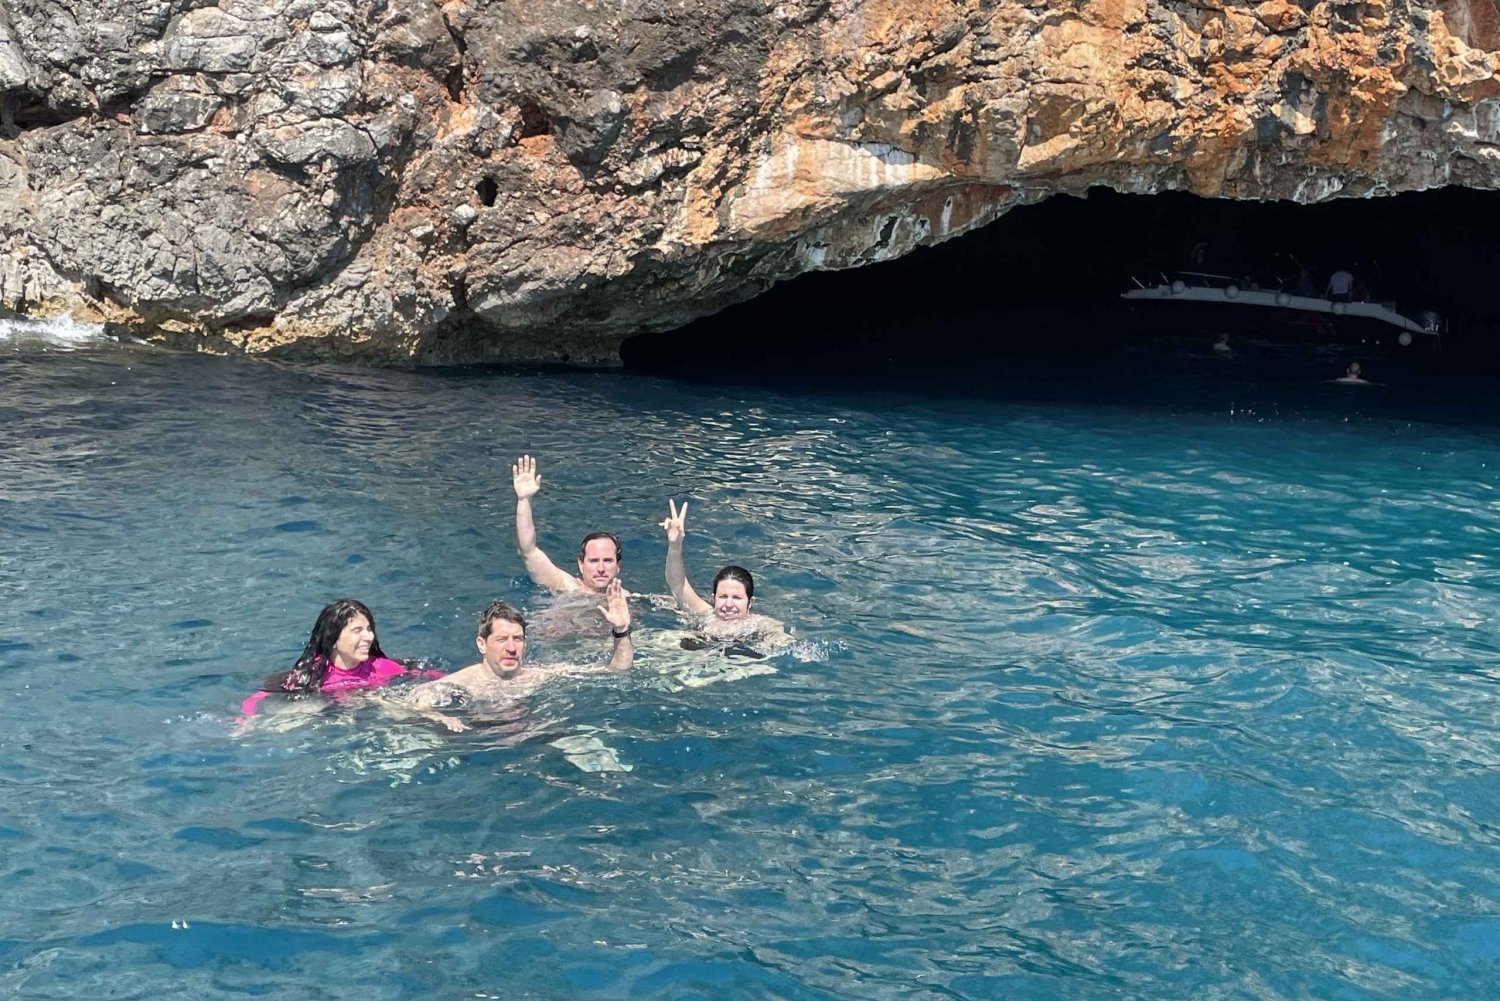 Kotor: Båtkryssning med simning i blå grottor och ubåtsbas